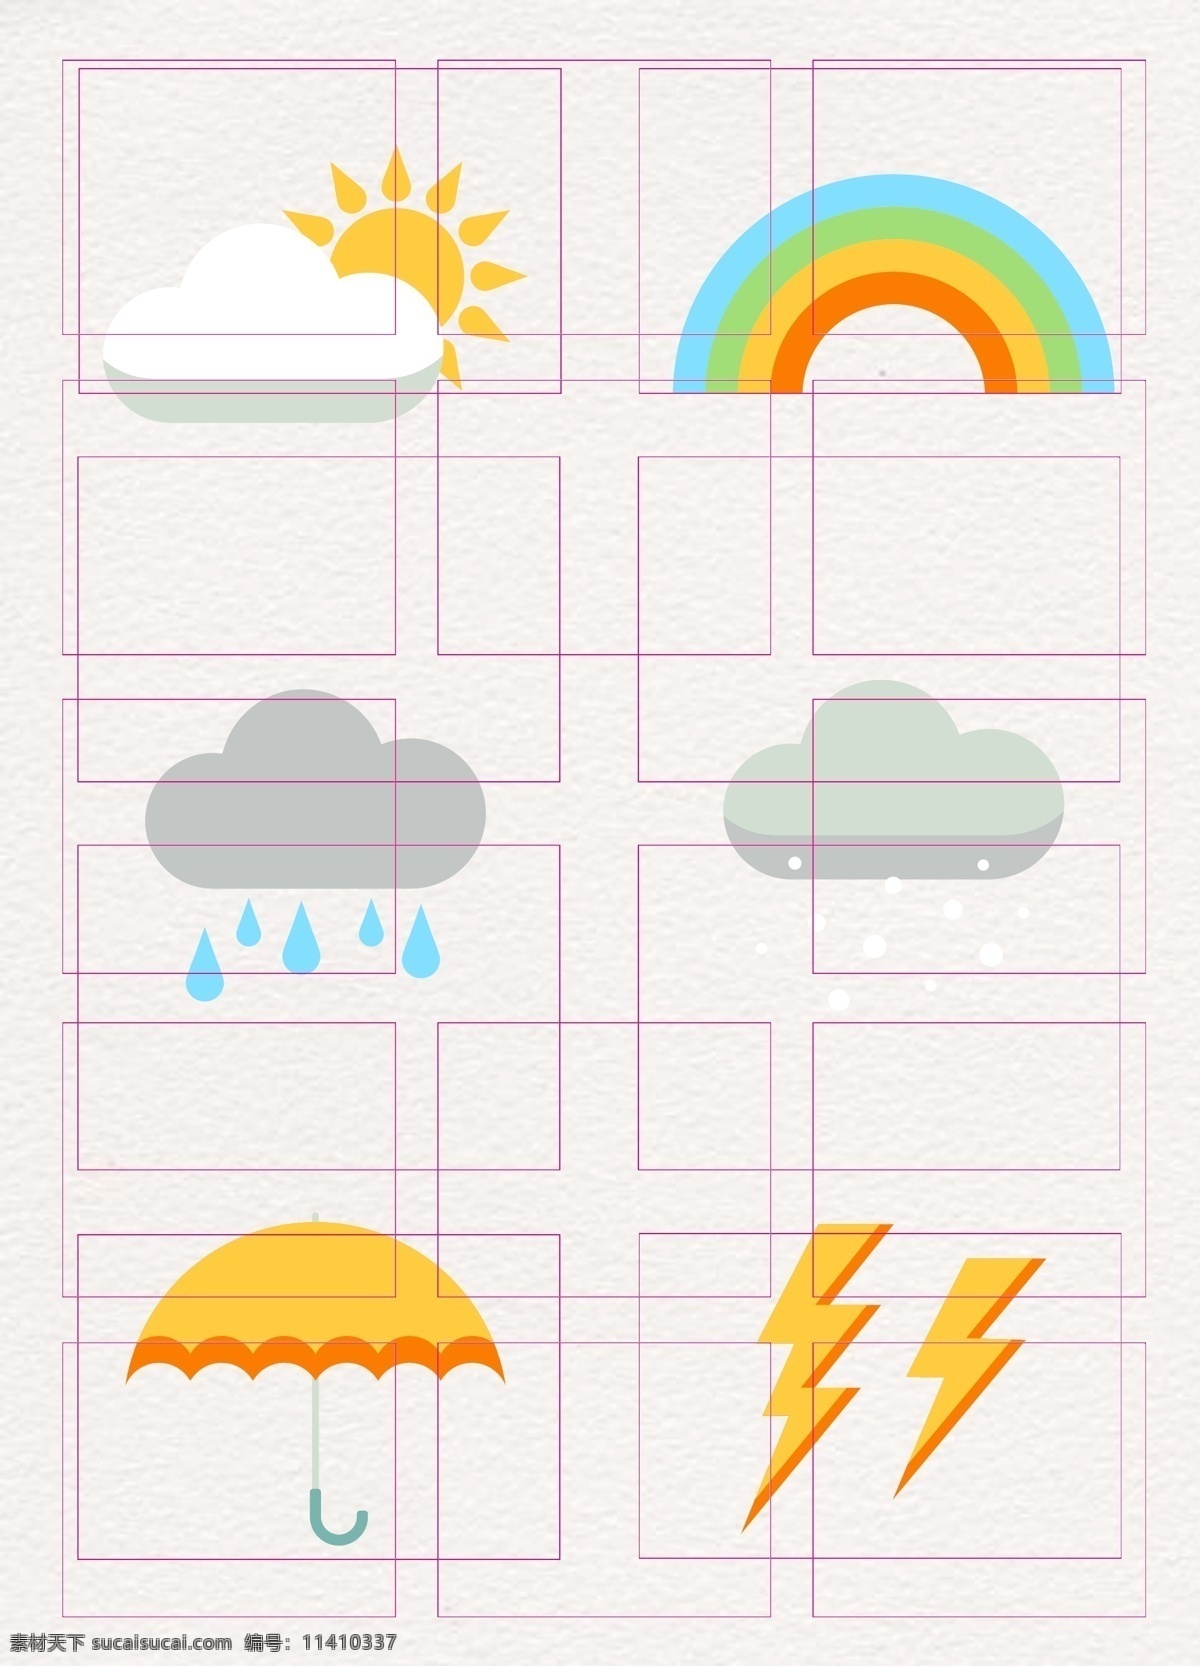 卡通 矢量 组 天气 图标素材 矢量图 彩虹 闪电 雨伞 ai元素 天气图标 晴天 下雨 下雪 天气预报元素